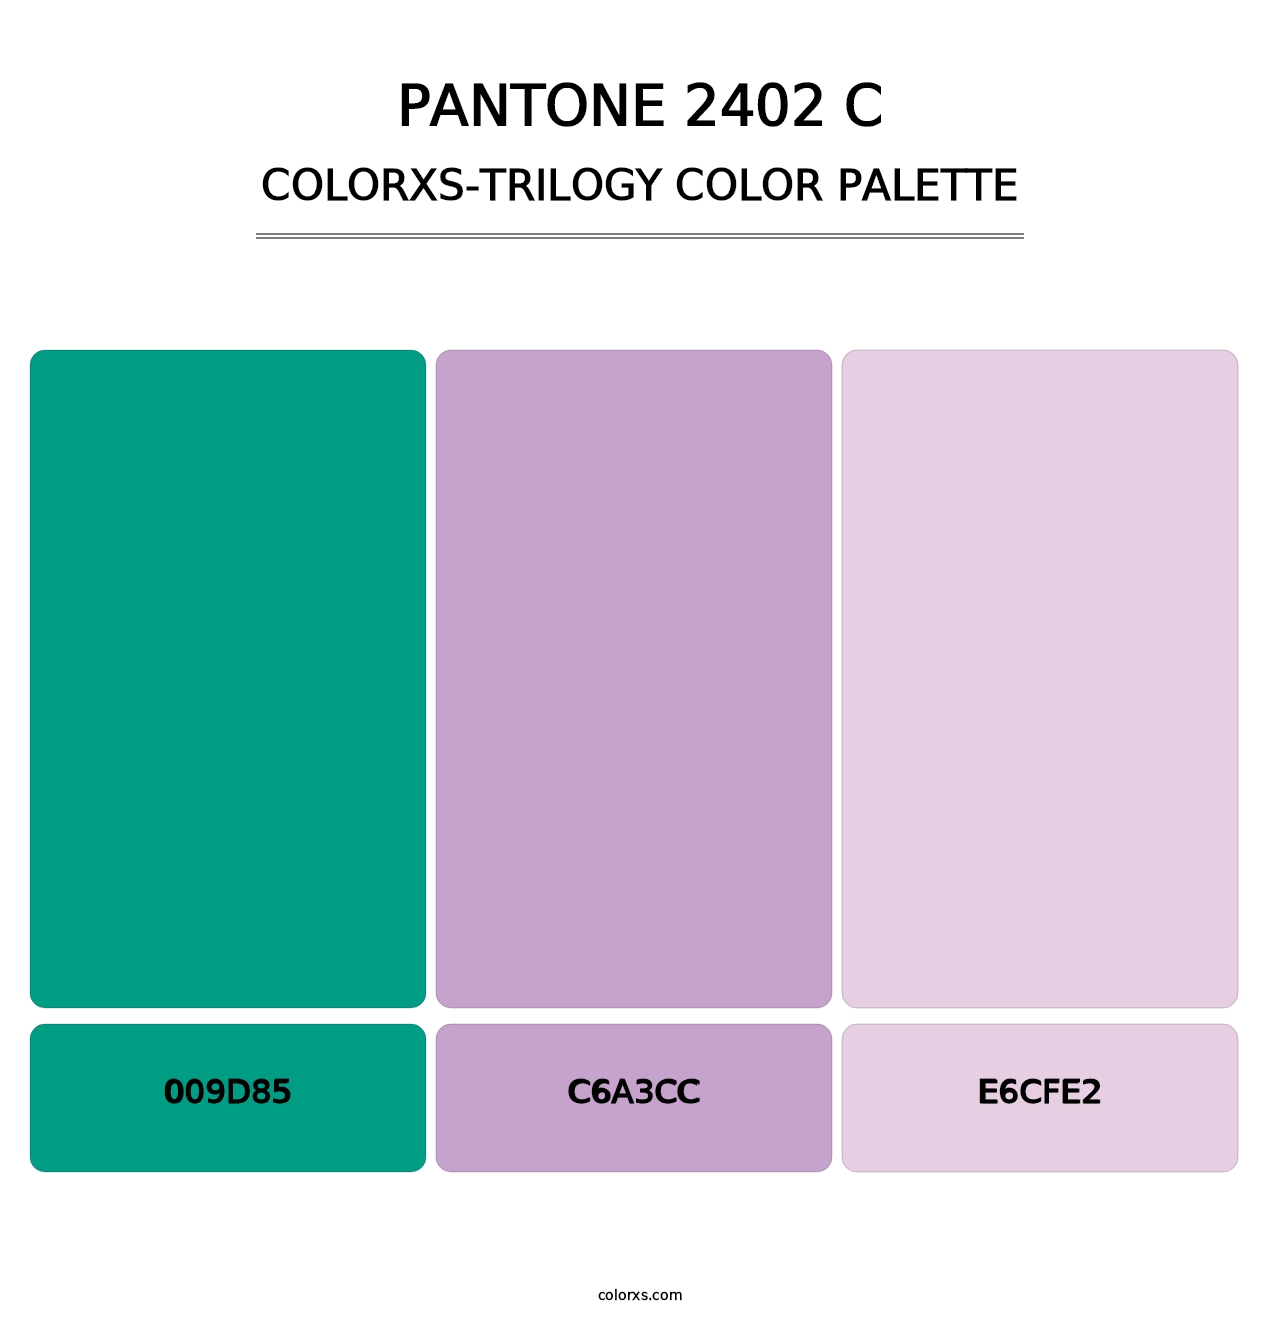 PANTONE 2402 C - Colorxs Trilogy Palette